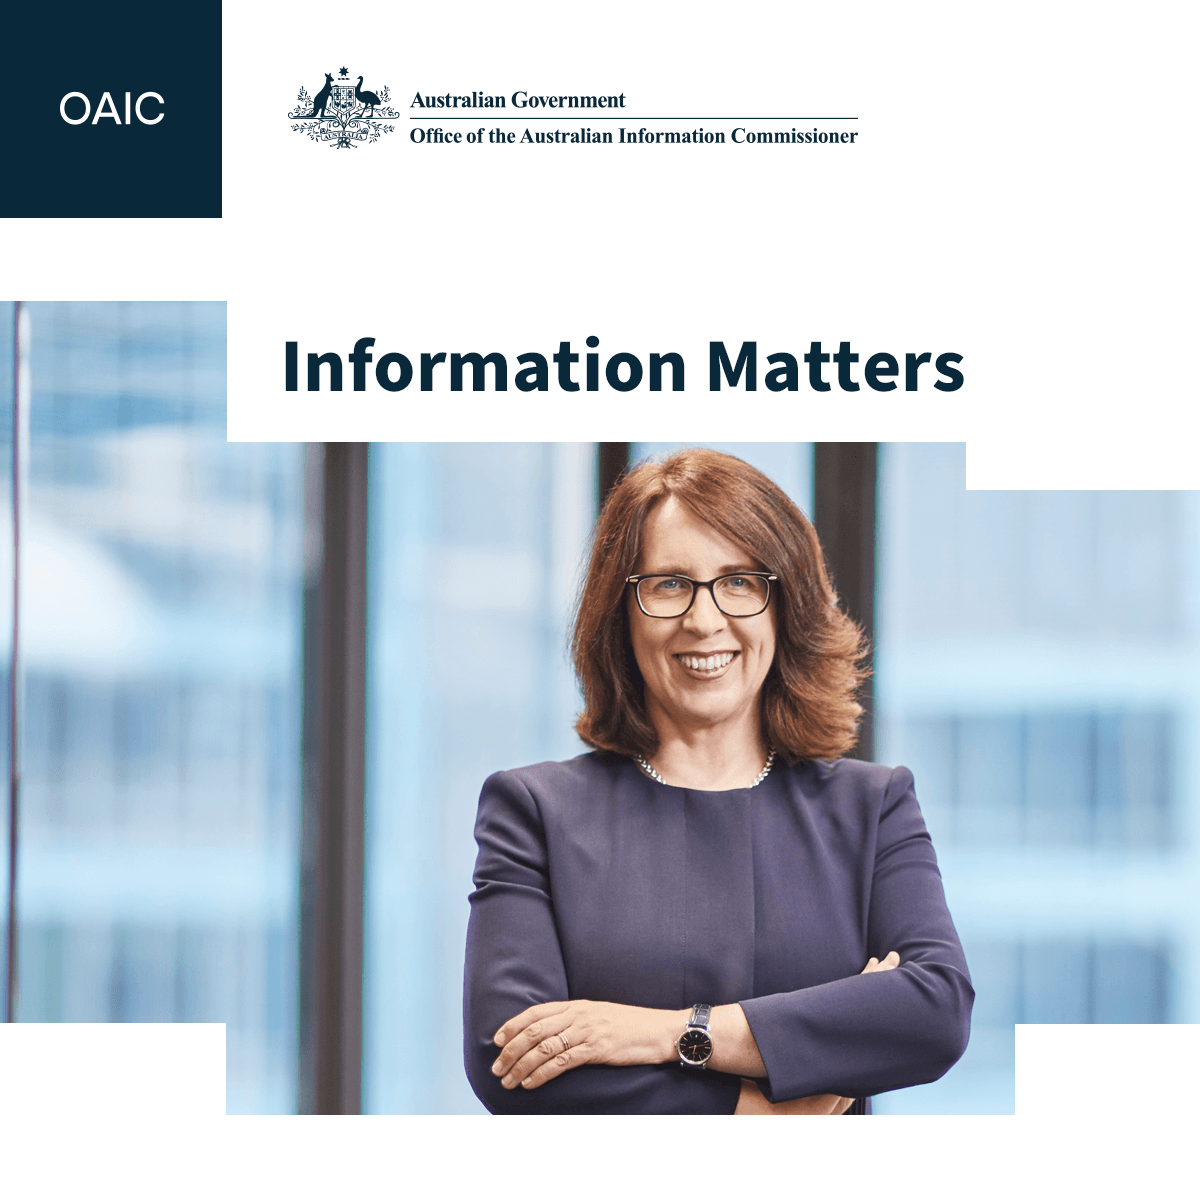 OAIC - Information Matters